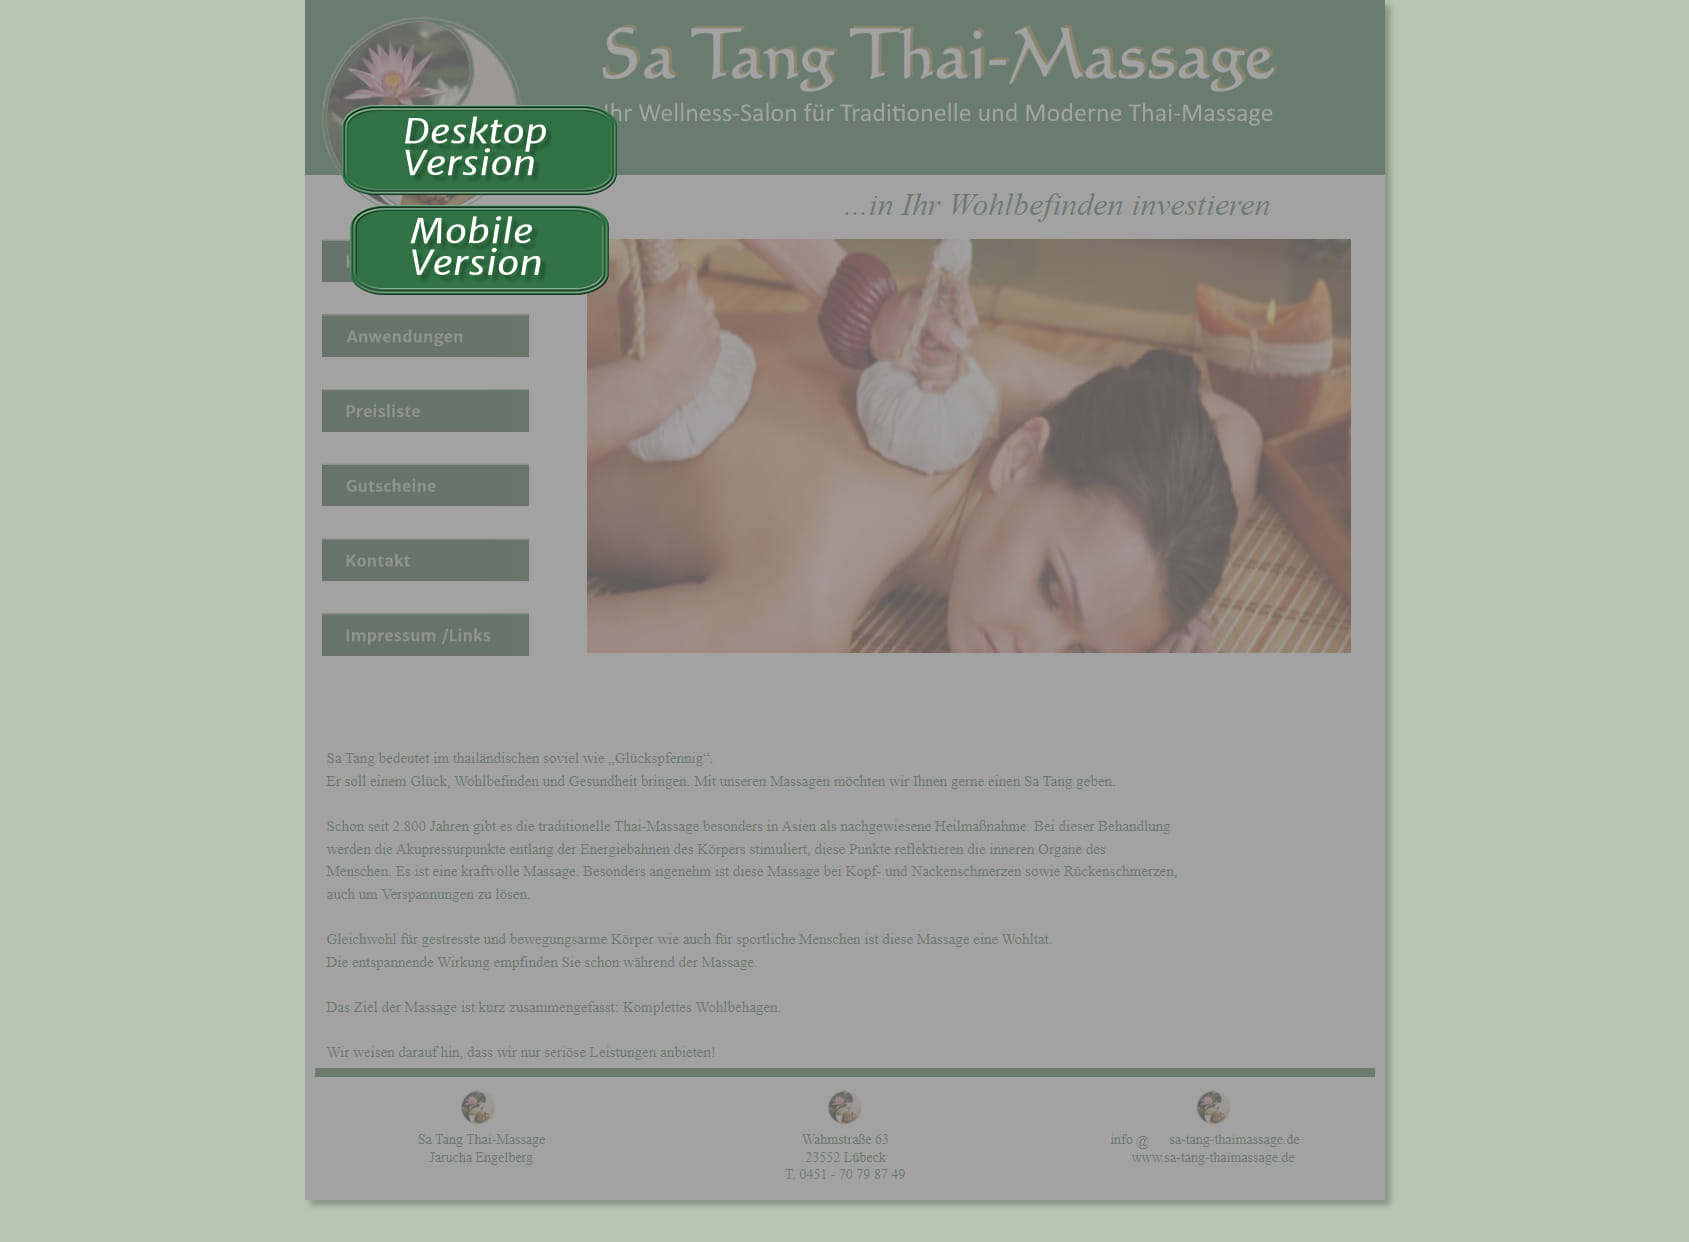 Sa Tang Thai massage